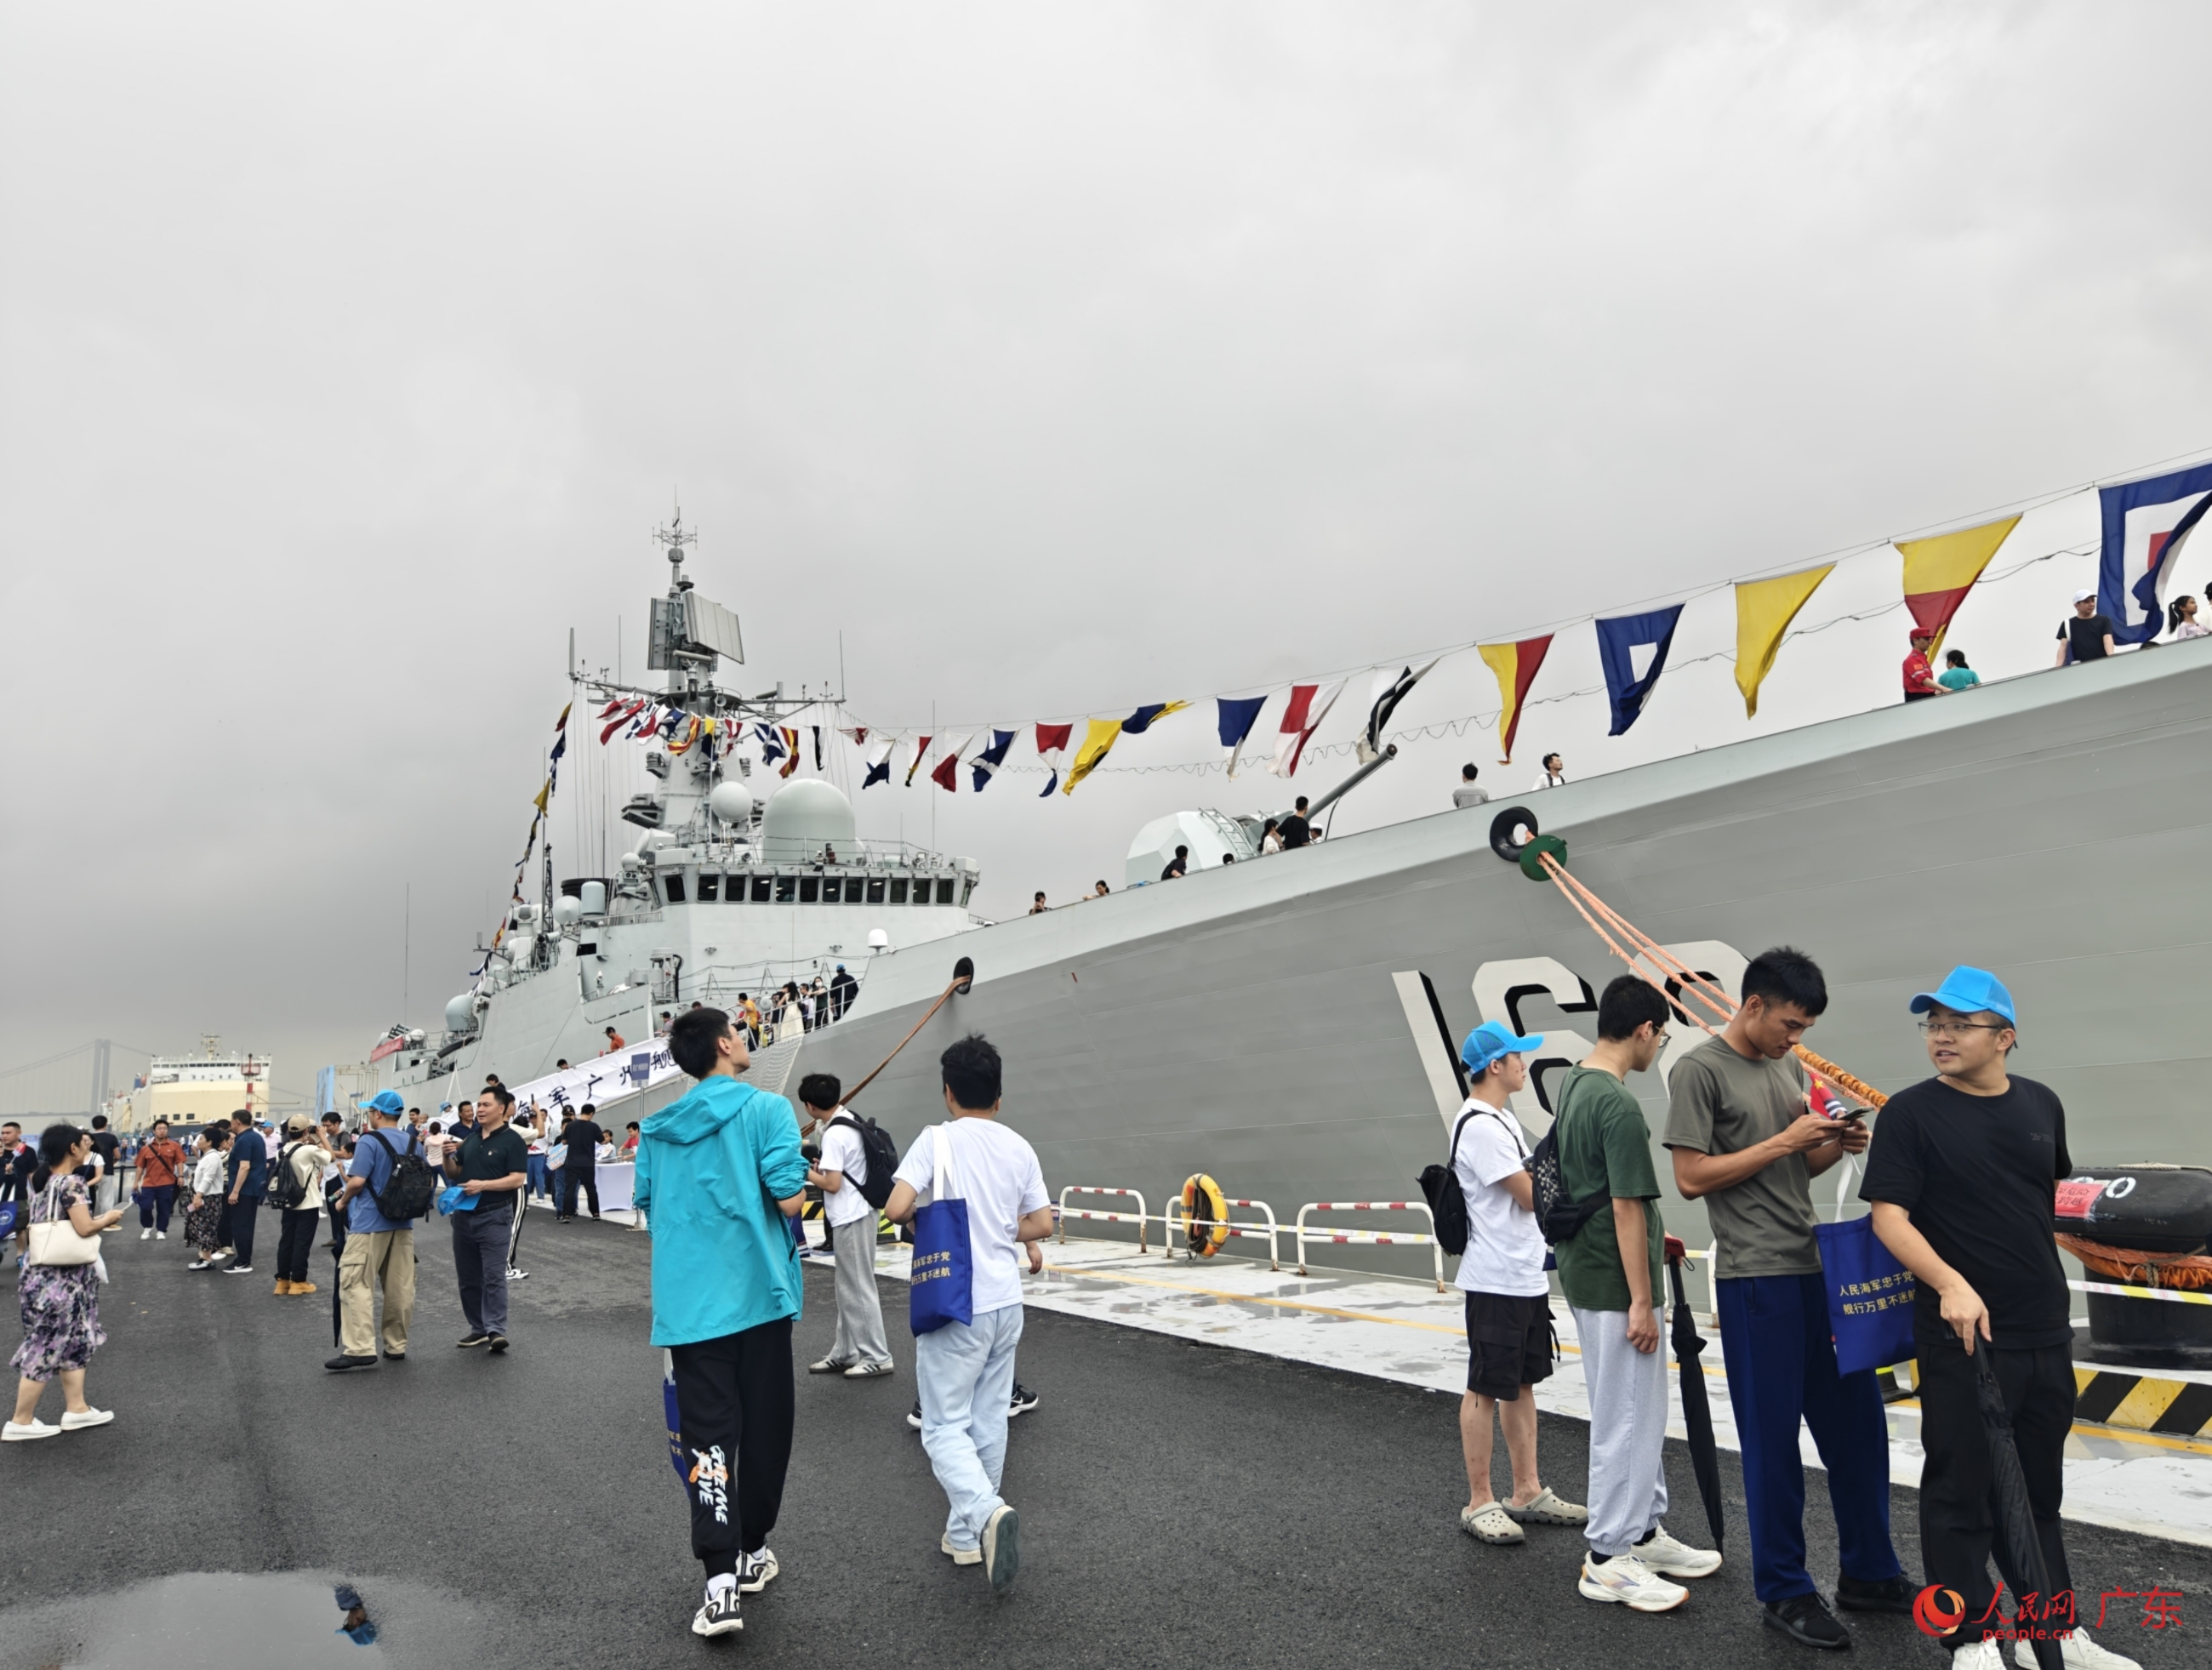 庆祝人民海军成立75周年双拥共建暨“广州舰回家乡”活动现场。人民网 王雅蝶摄